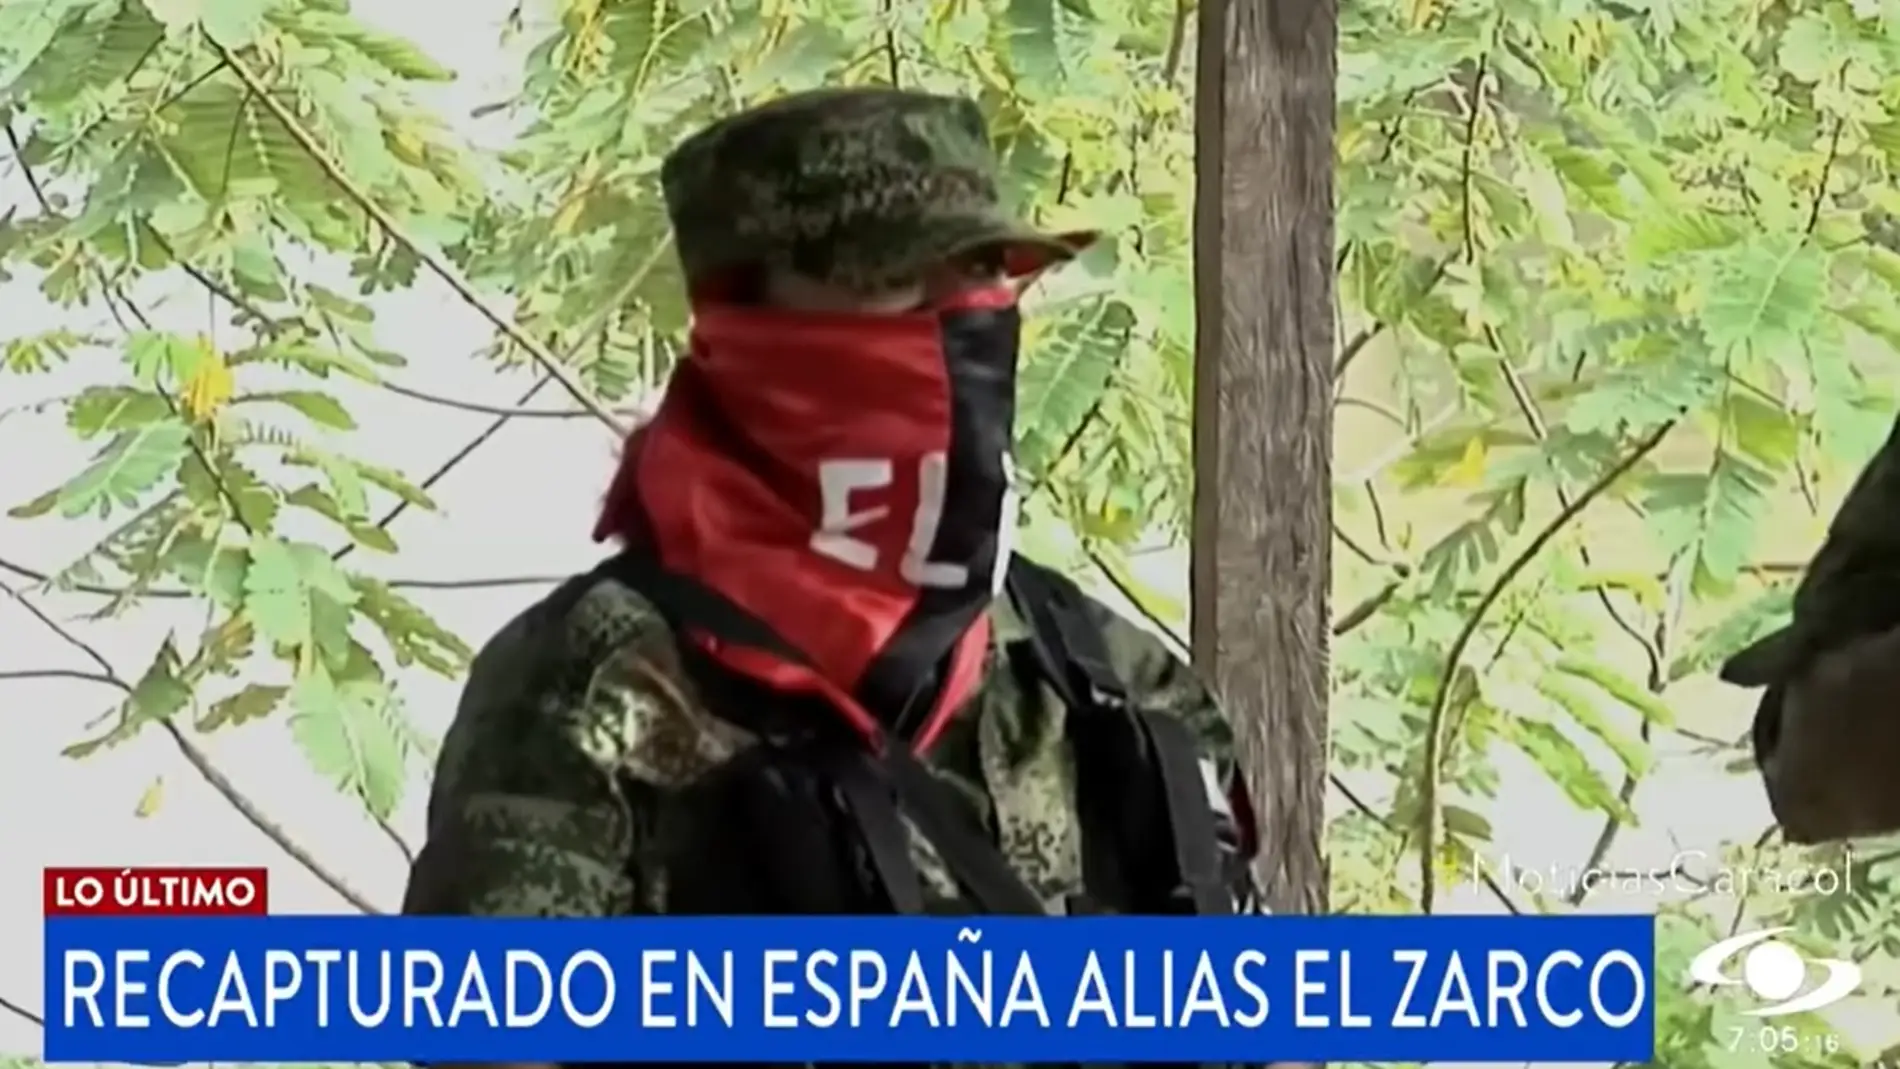 La televisión colombiana se hace eco de la captura de "el zarco" en Alicante